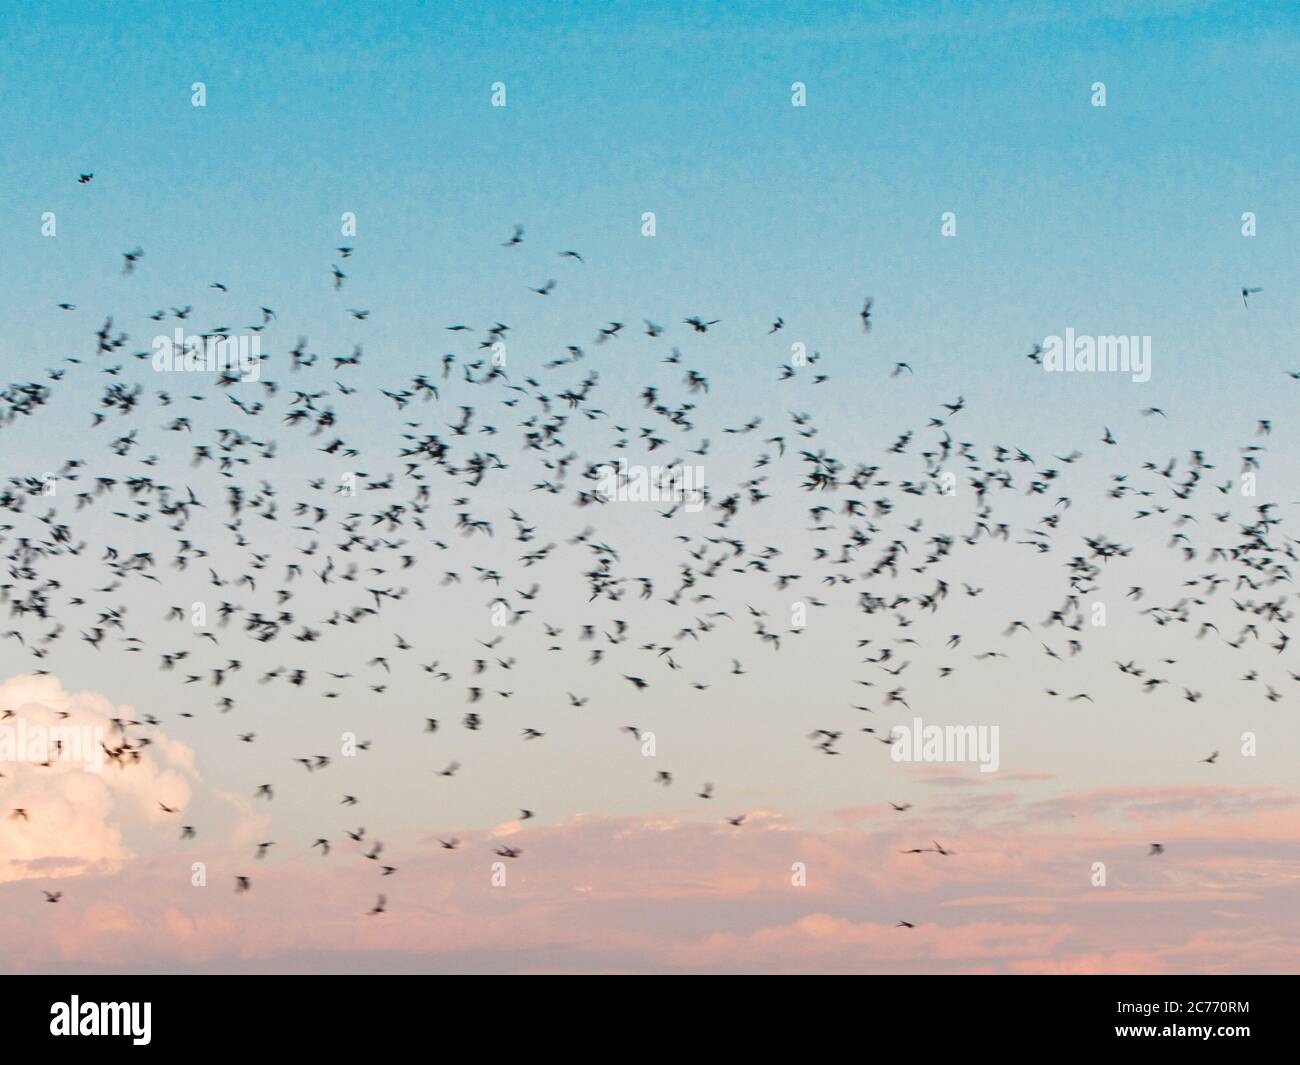 Bats at sky (Chihuahua-town) Stock Photo